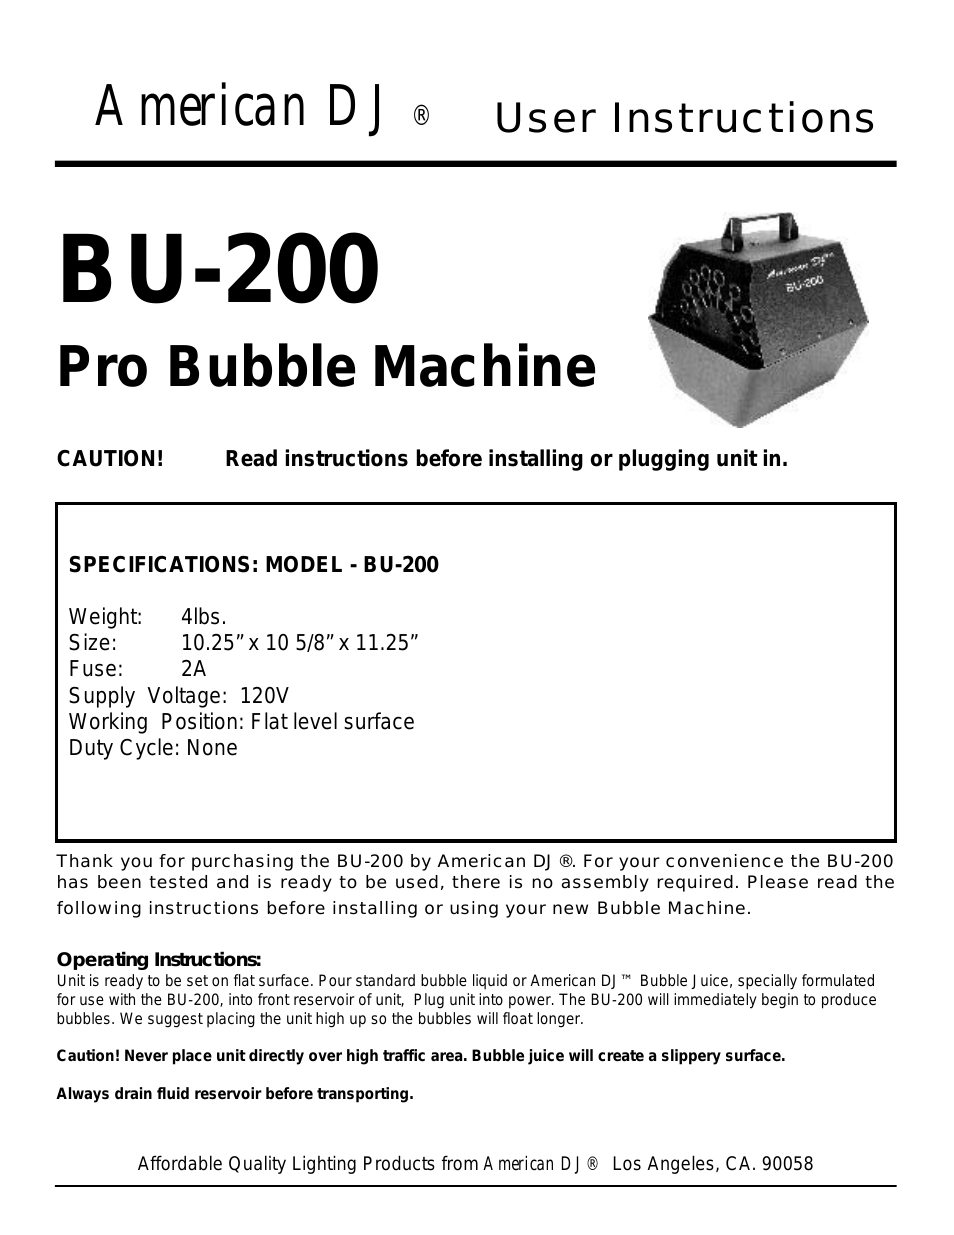 BU-200